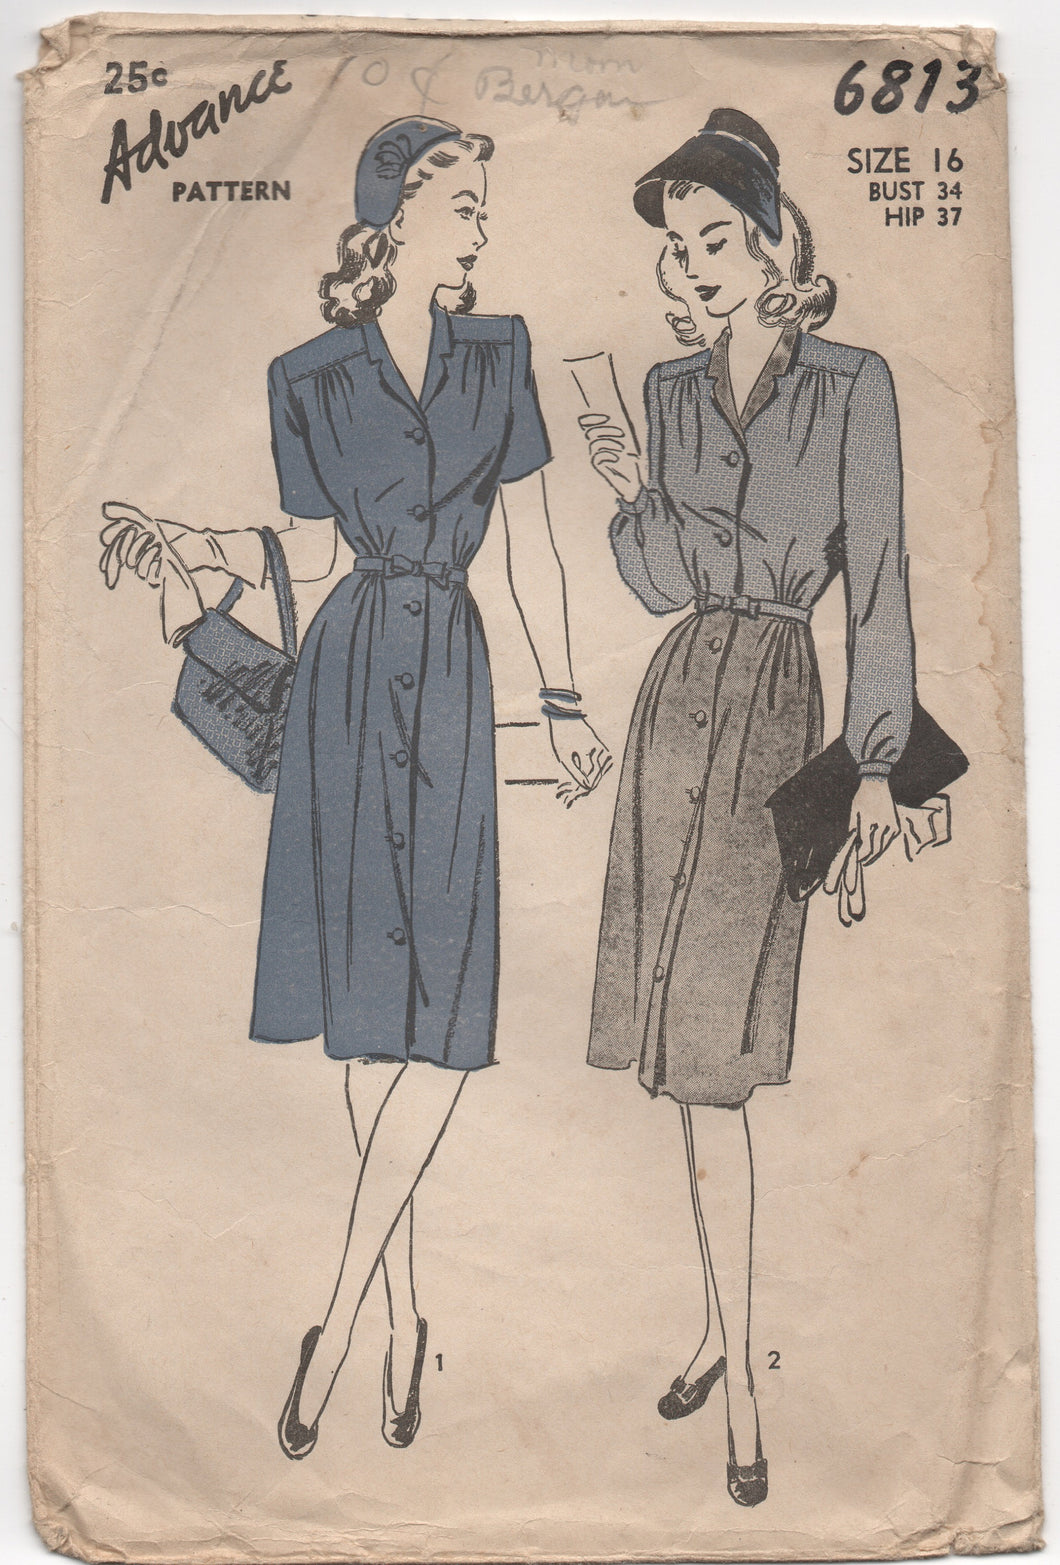 1940's Advance One Piece Shirtwaist Dress with Bow Detail at Waist - Bust 34